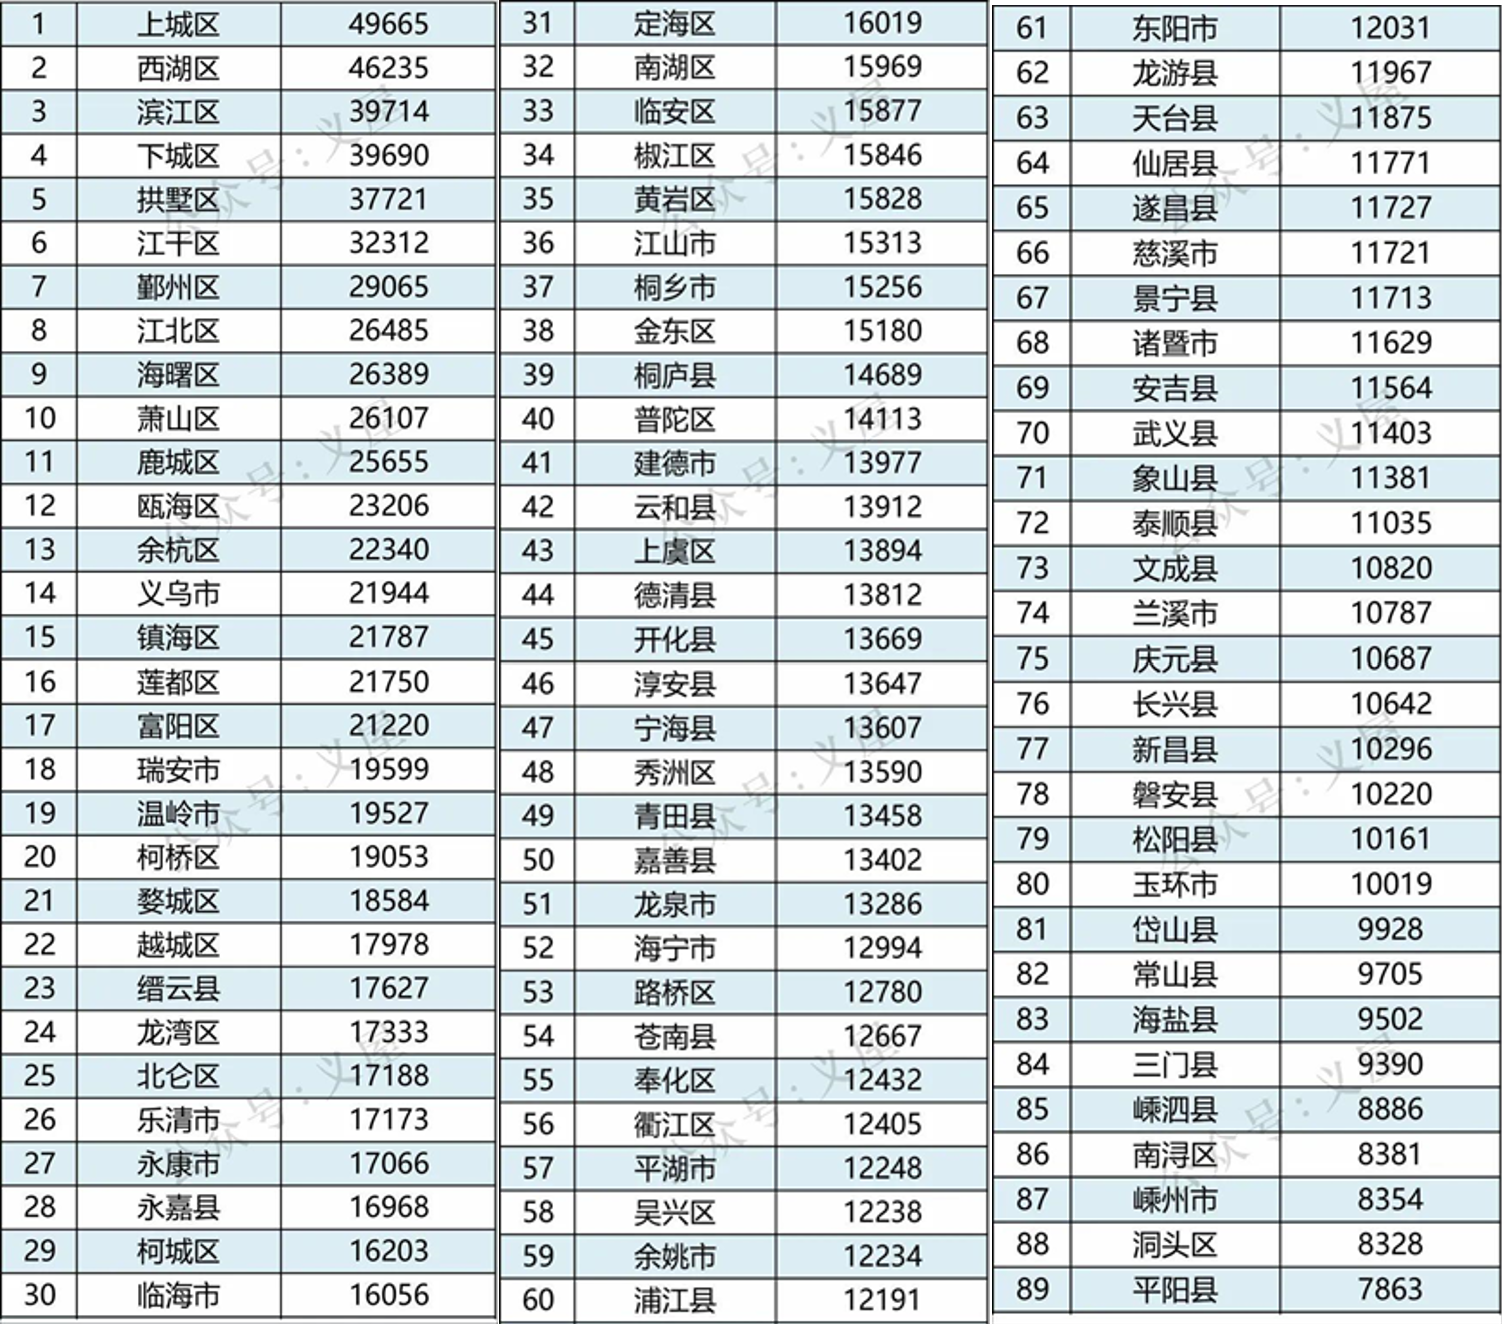 浙江省各县市区房价分析24 温岭市、瑞安市、富阳区